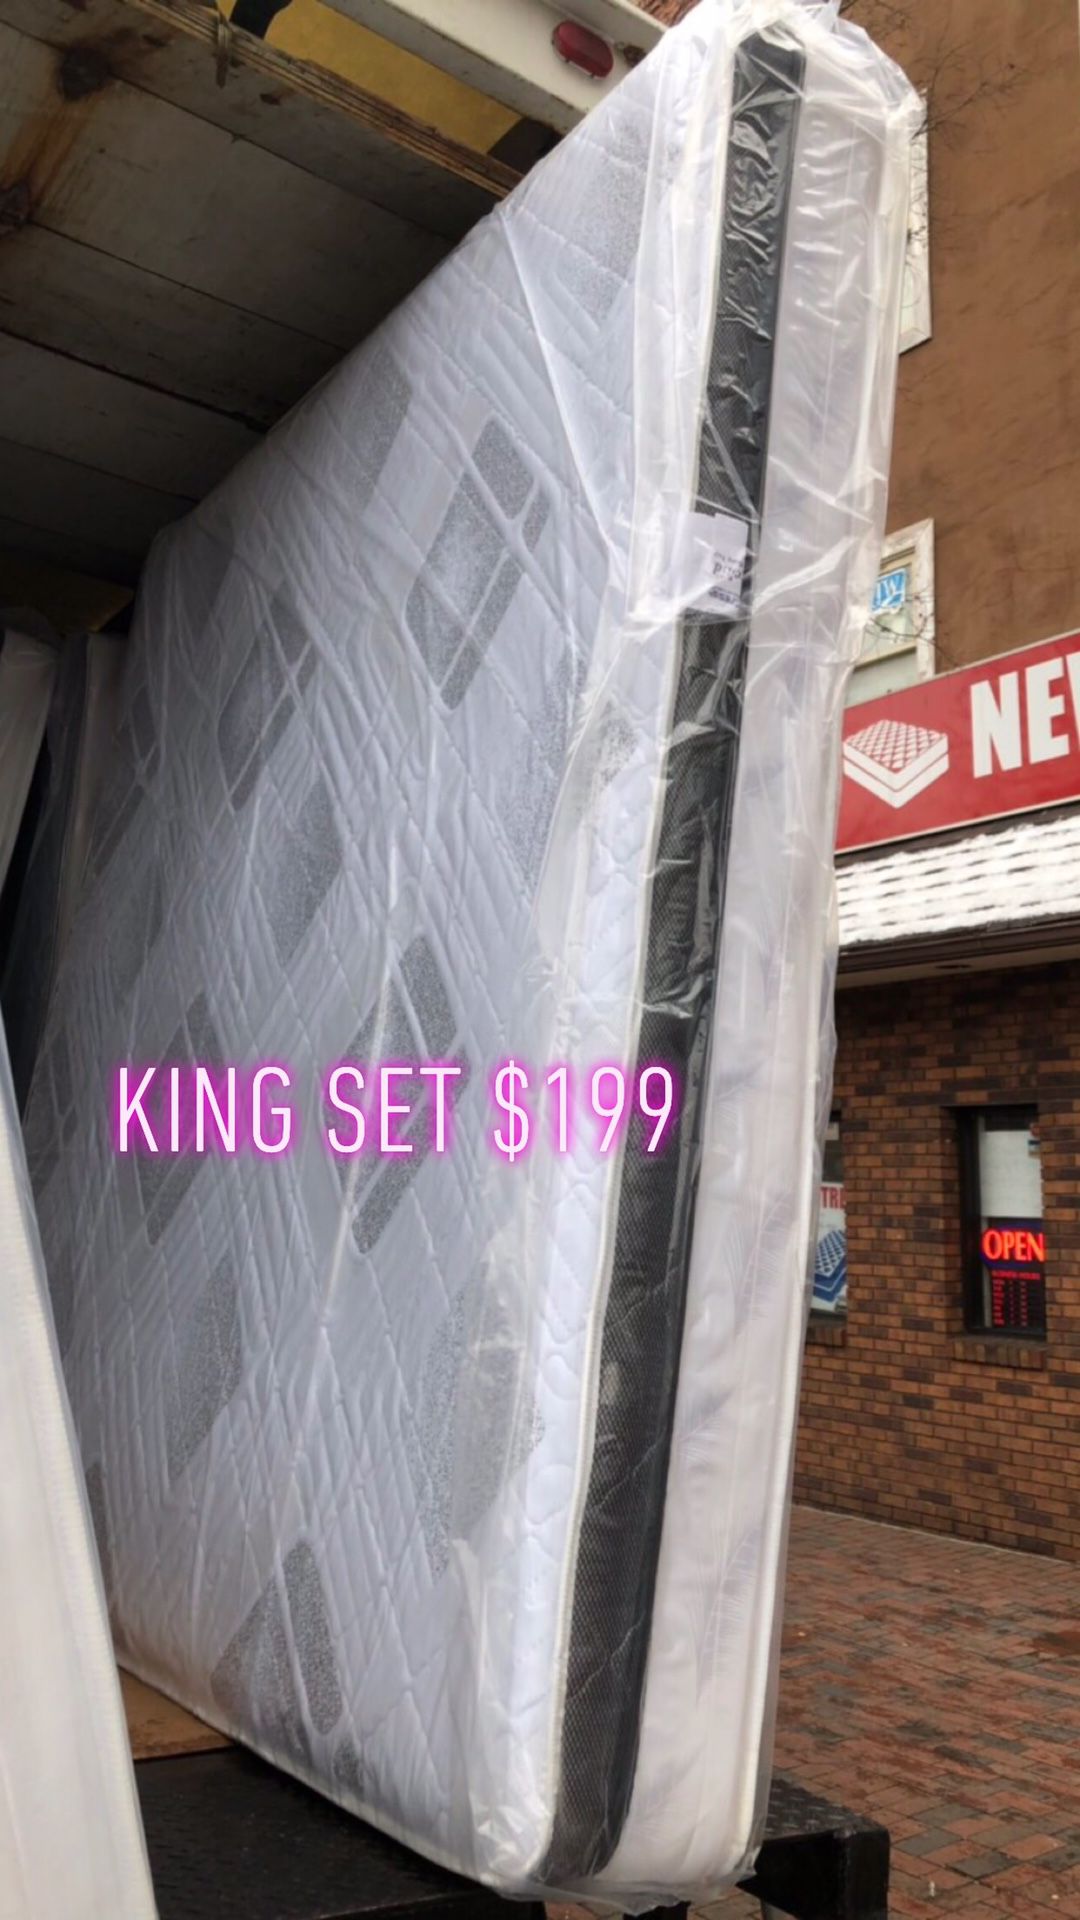 King set $199